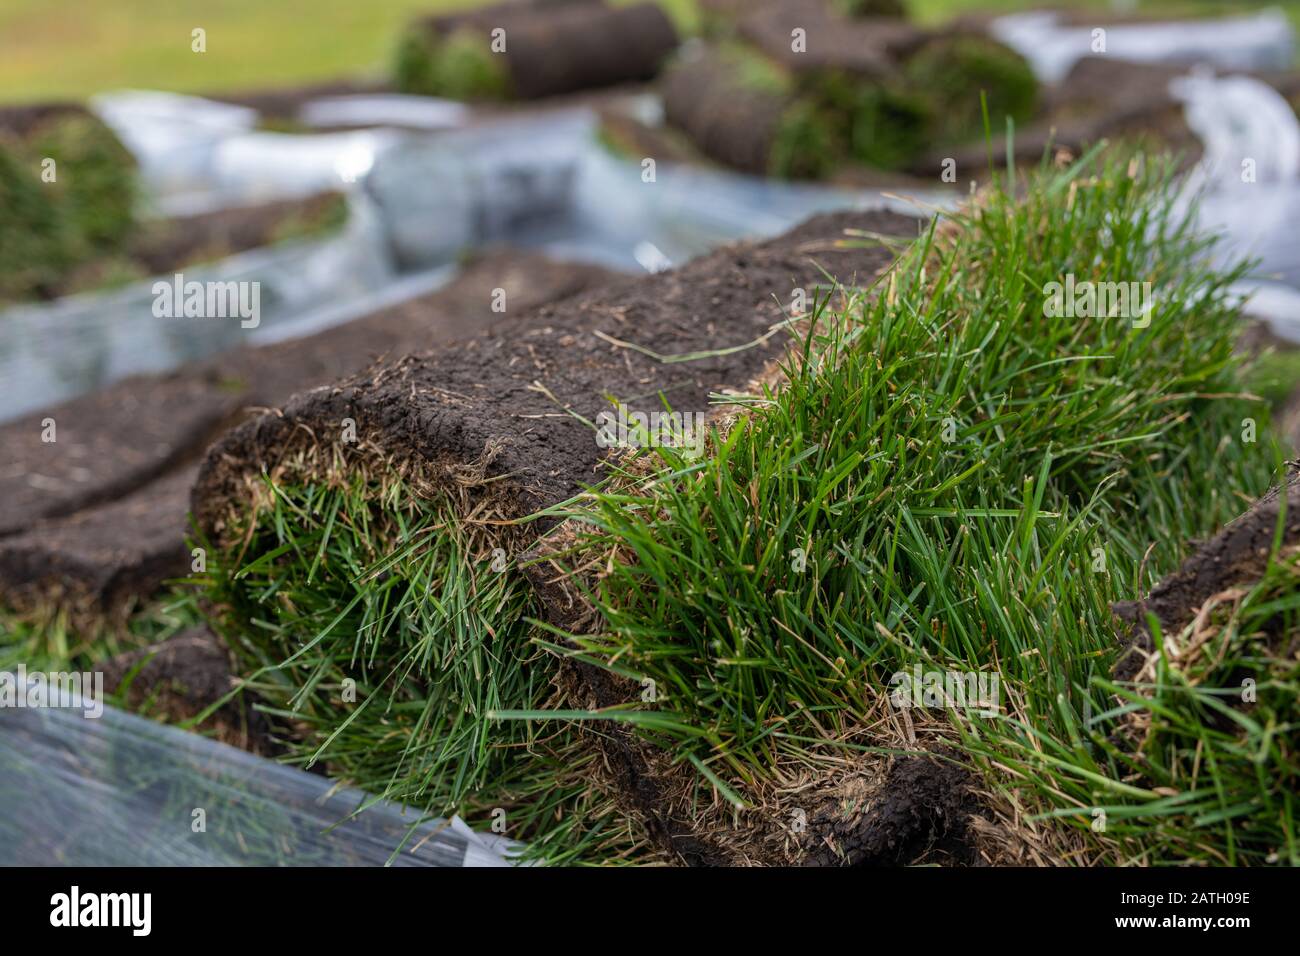 Rouleau d'herbe à gazon, tapis vert pour pelouse. Pile de rouleaux de gazon pour l'aménagement paysager Banque D'Images